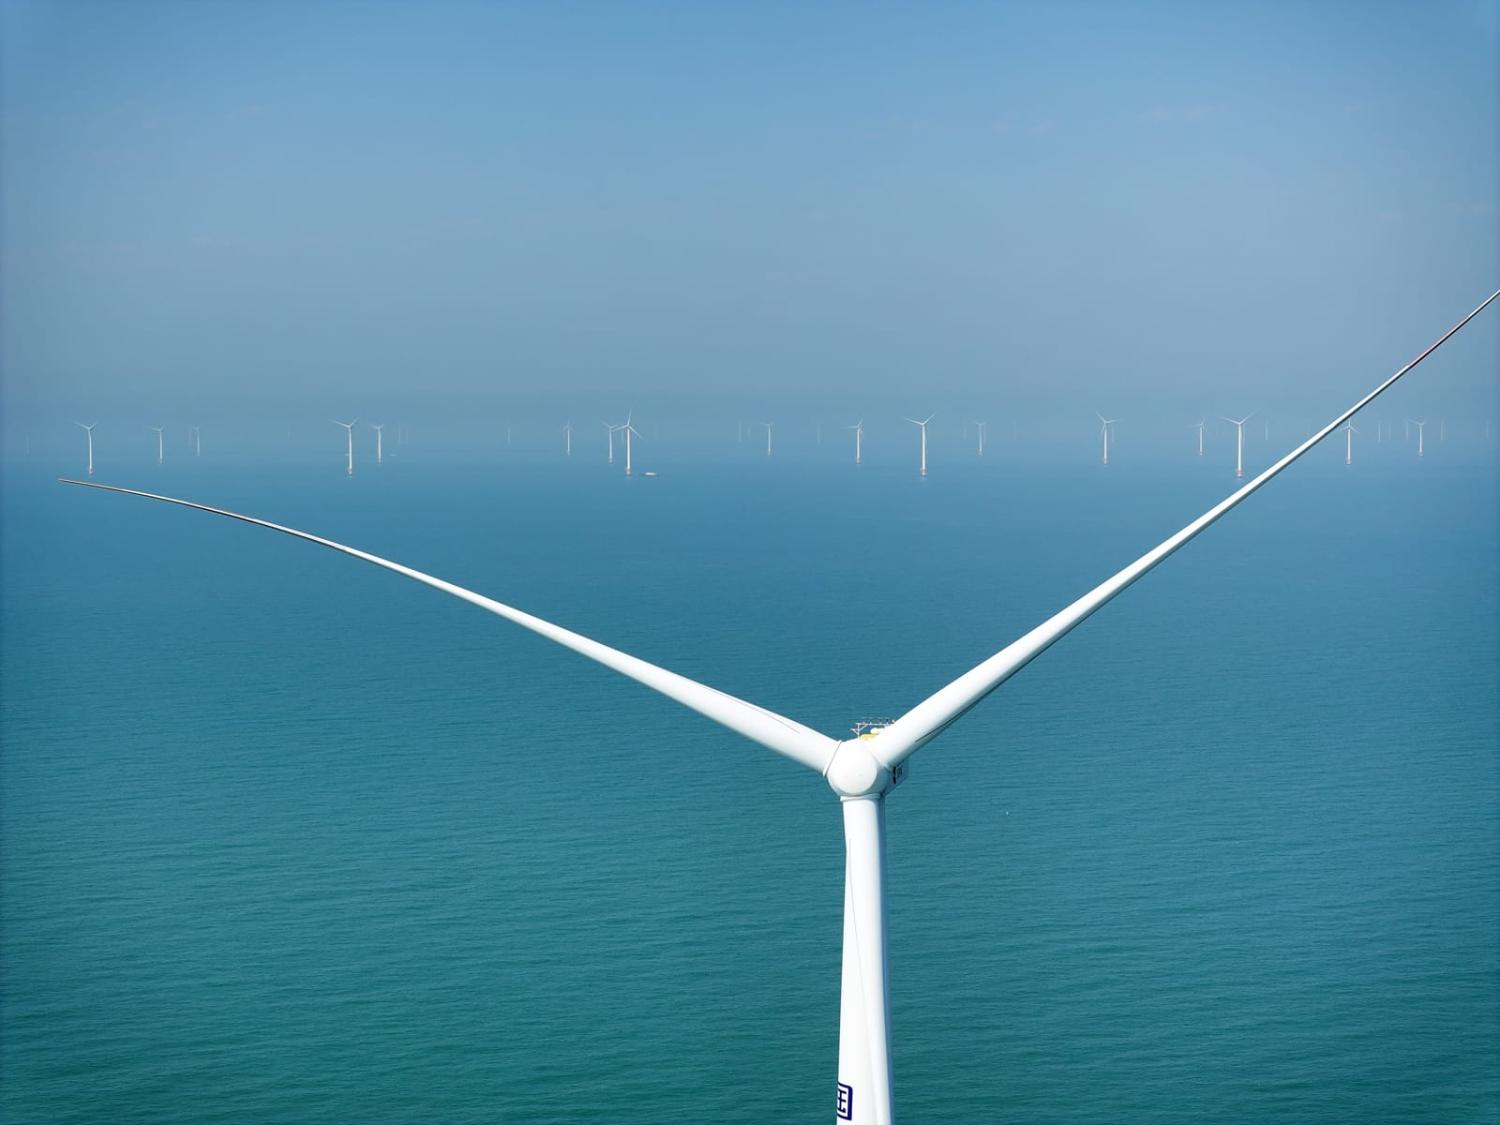 Turbines at an offshore wind farm in Jiangsu province, China (Xu Congjun/VCG via Getty Images)